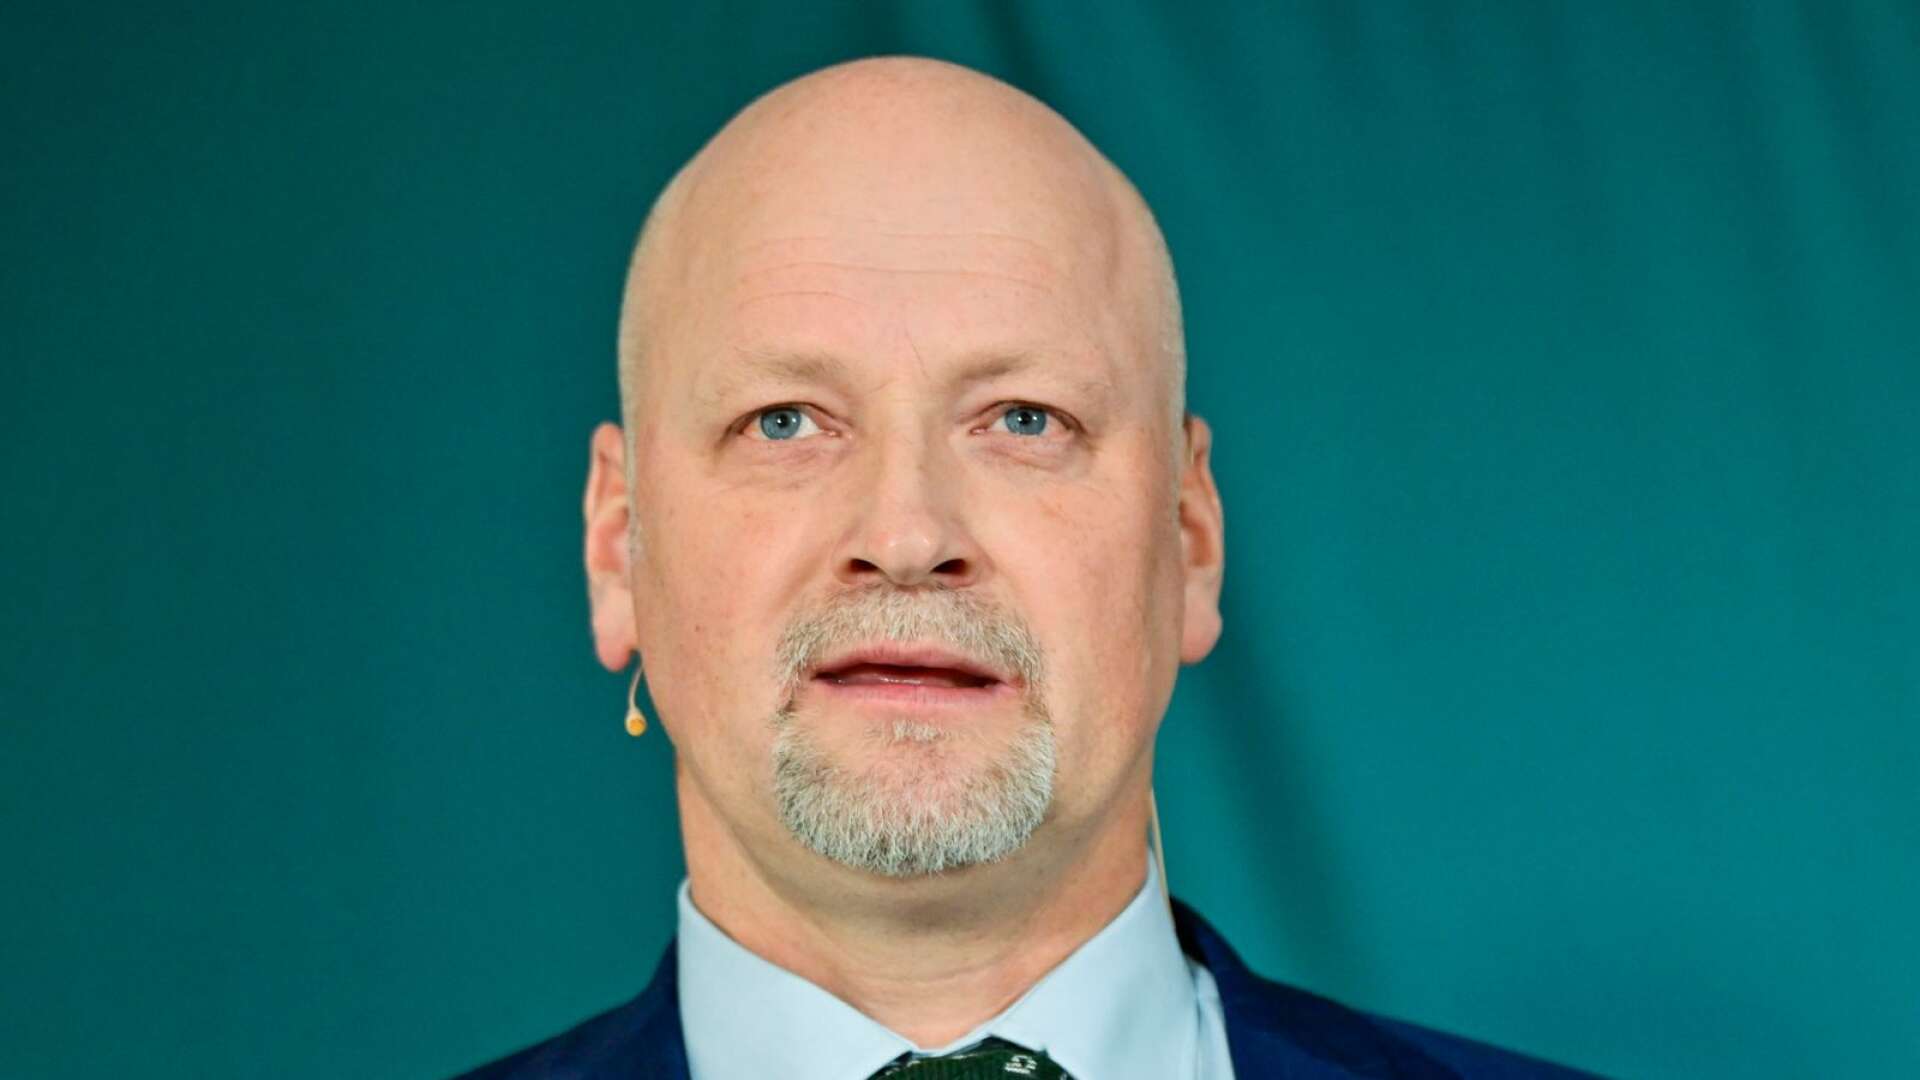 Daniel Bäckström är en av de tre kandidaterna till ny partiledare som presenterades av Centerpartiets valberedning under en pressträff på måndagen.